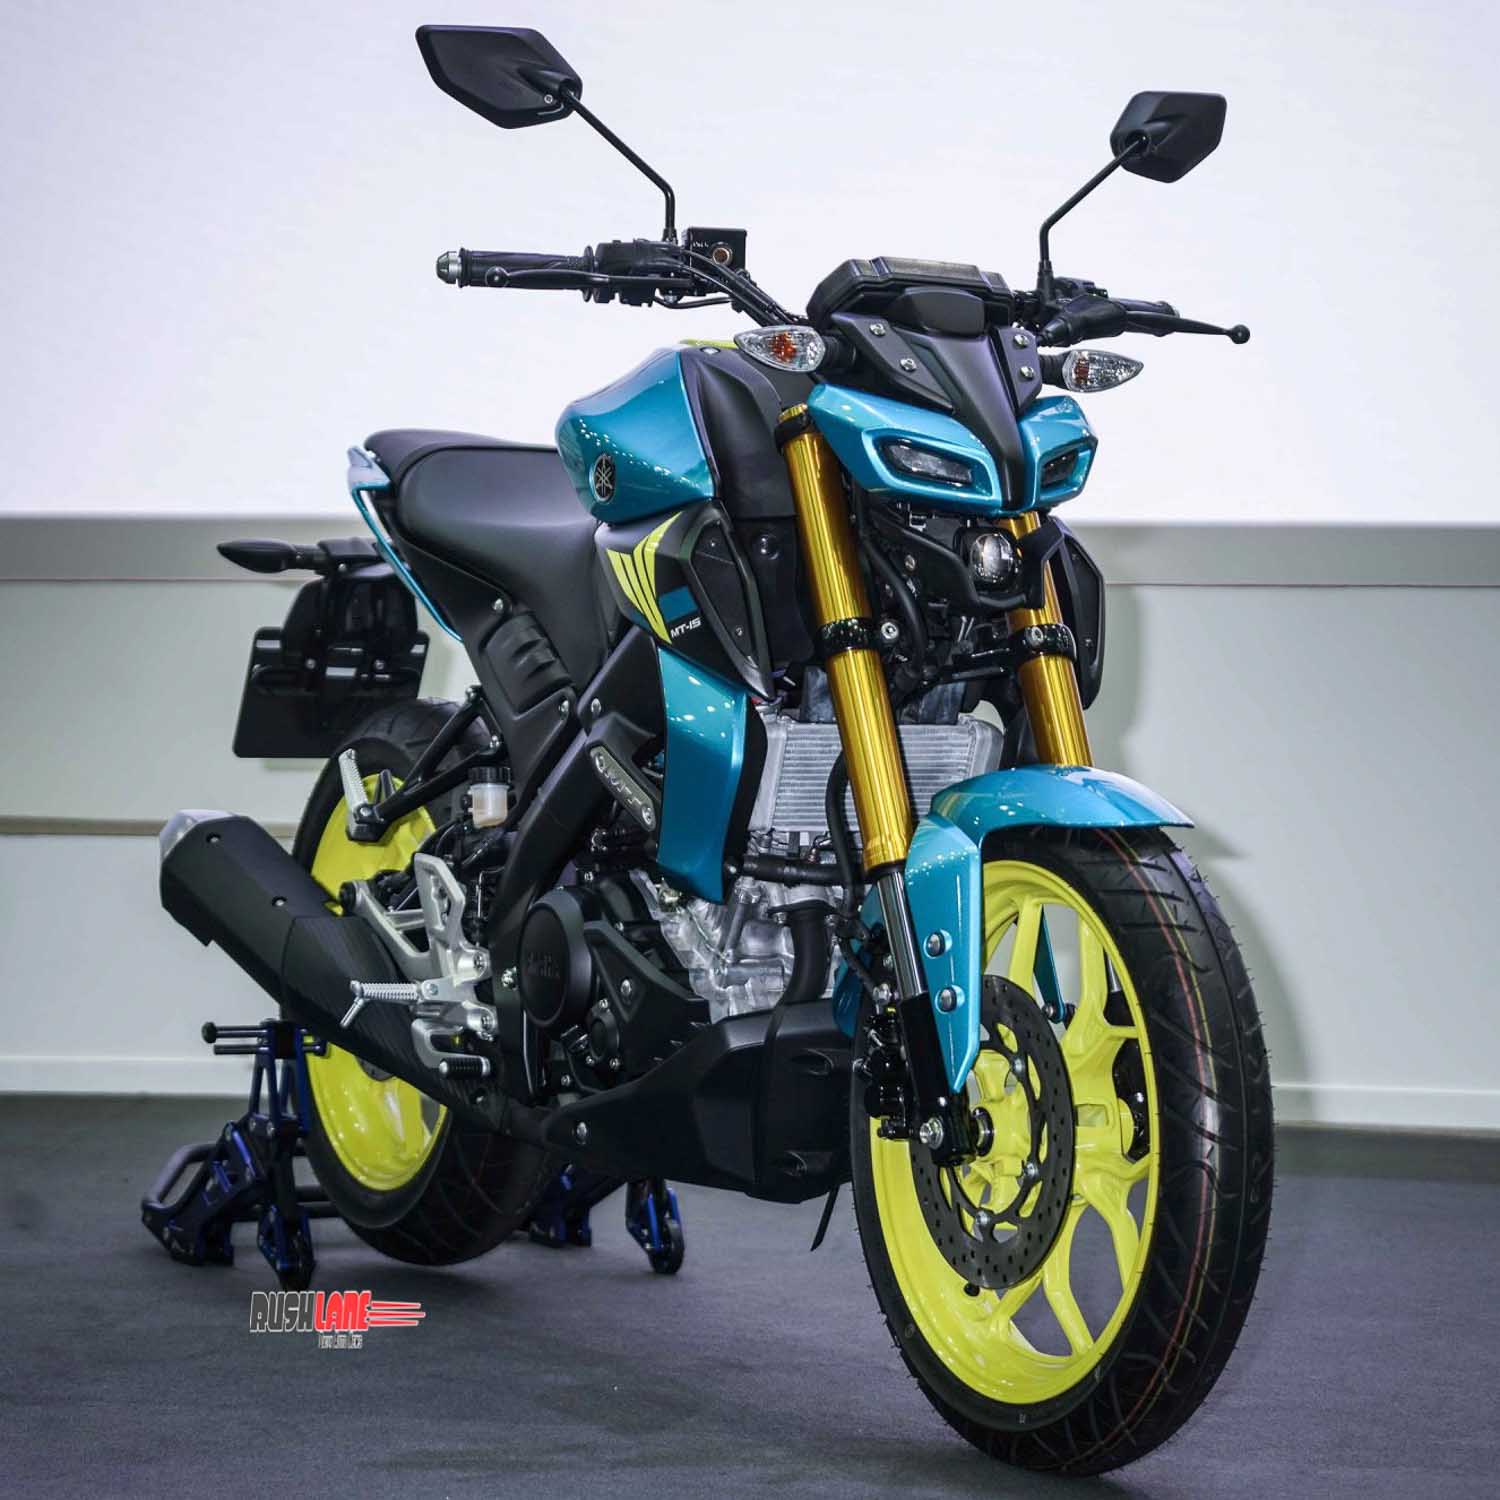 Yamaha MT-15 limited edition debuts at 2020 Bangkok Motor Show